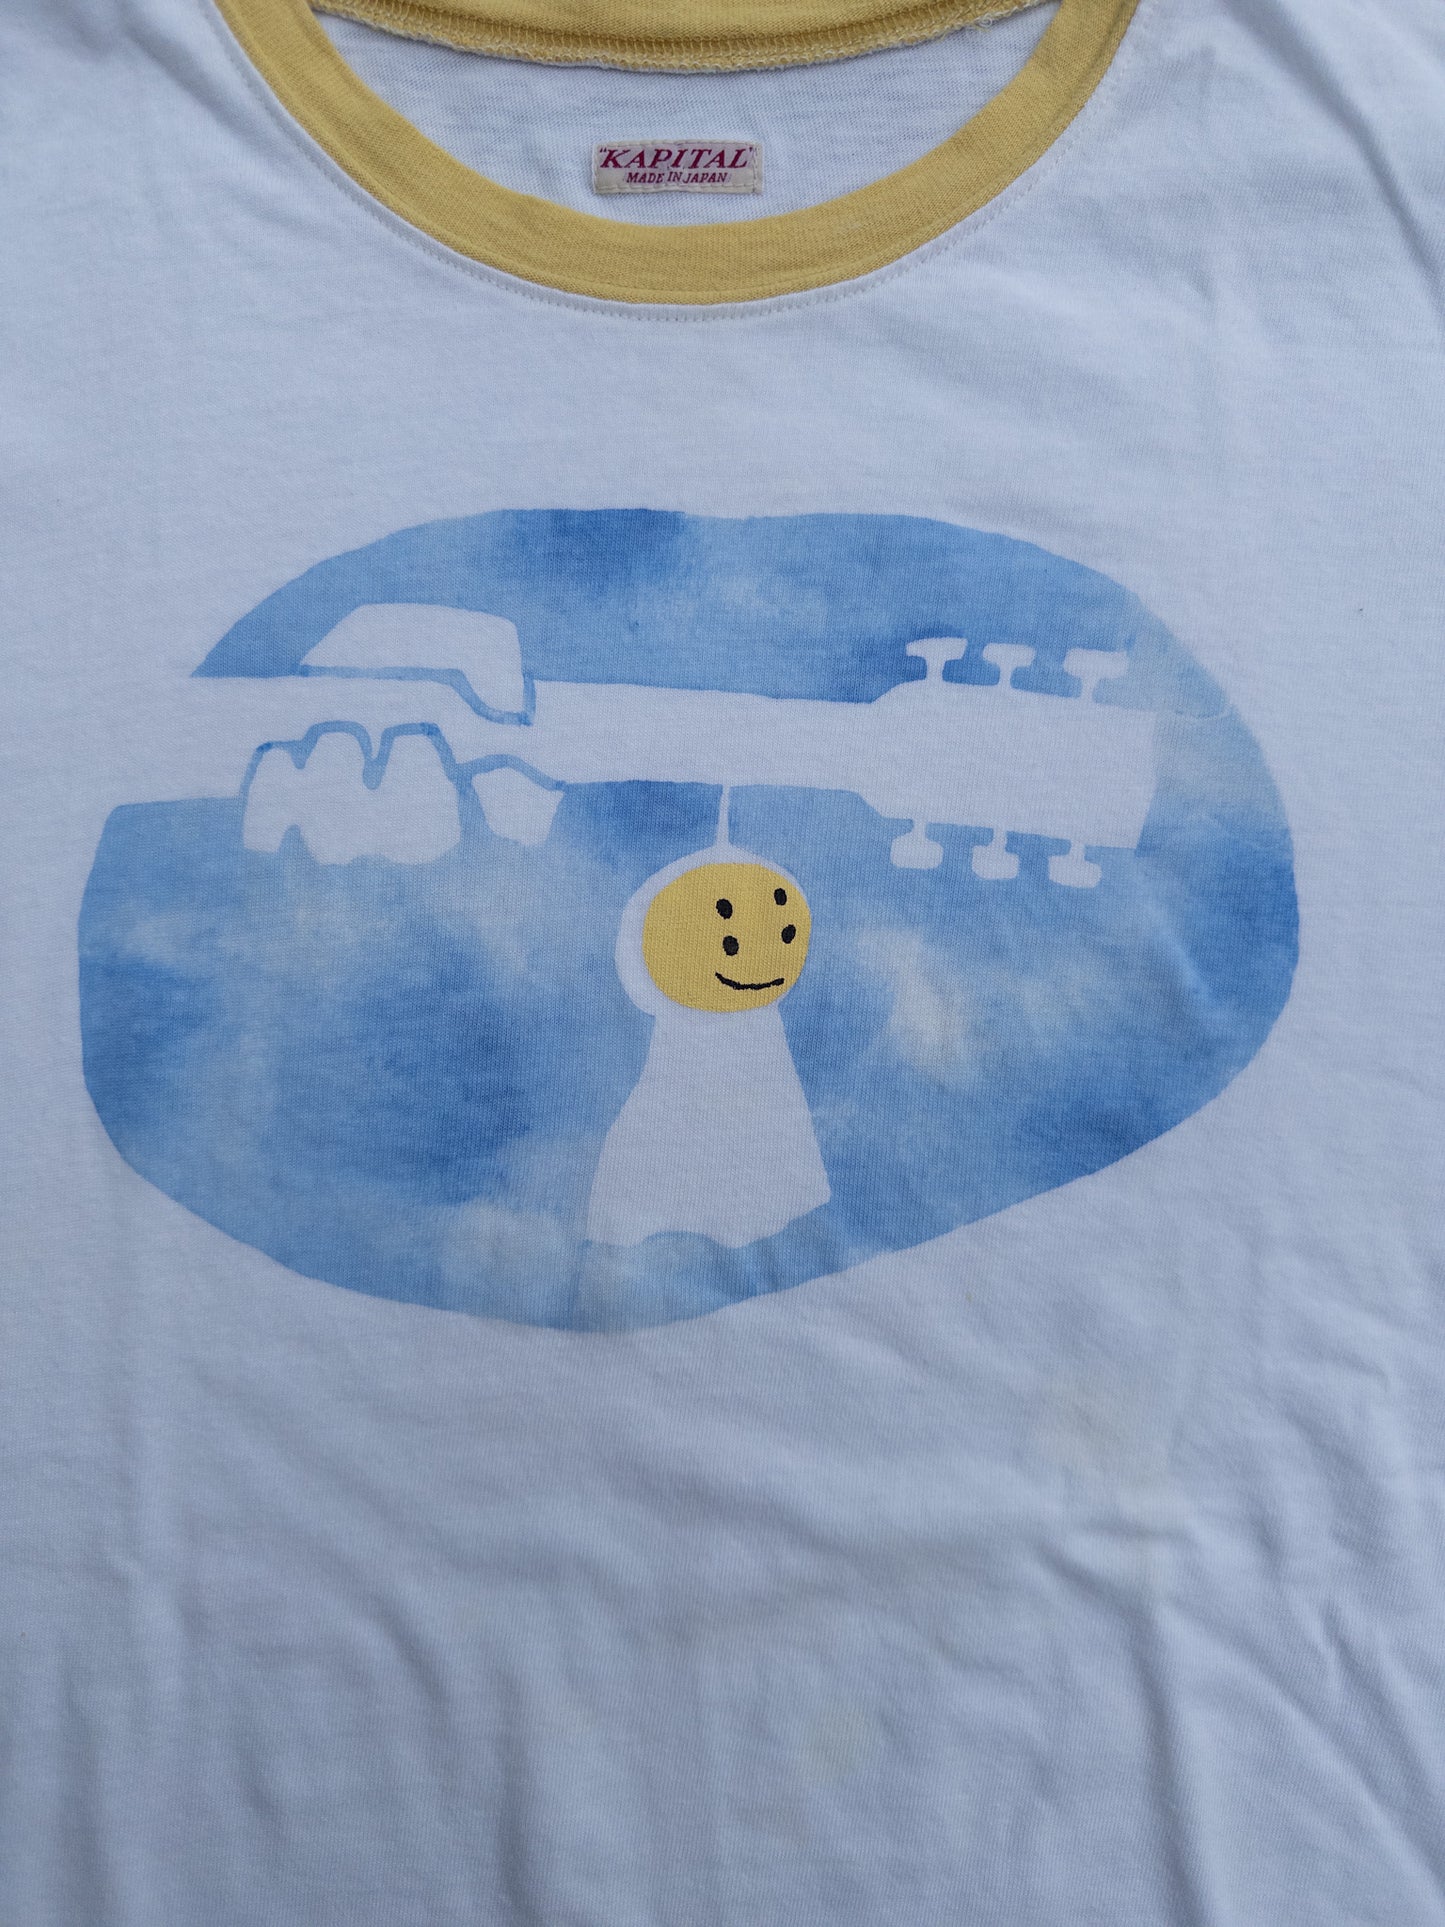 Kapital Smiley Face Ringer T-Shirt